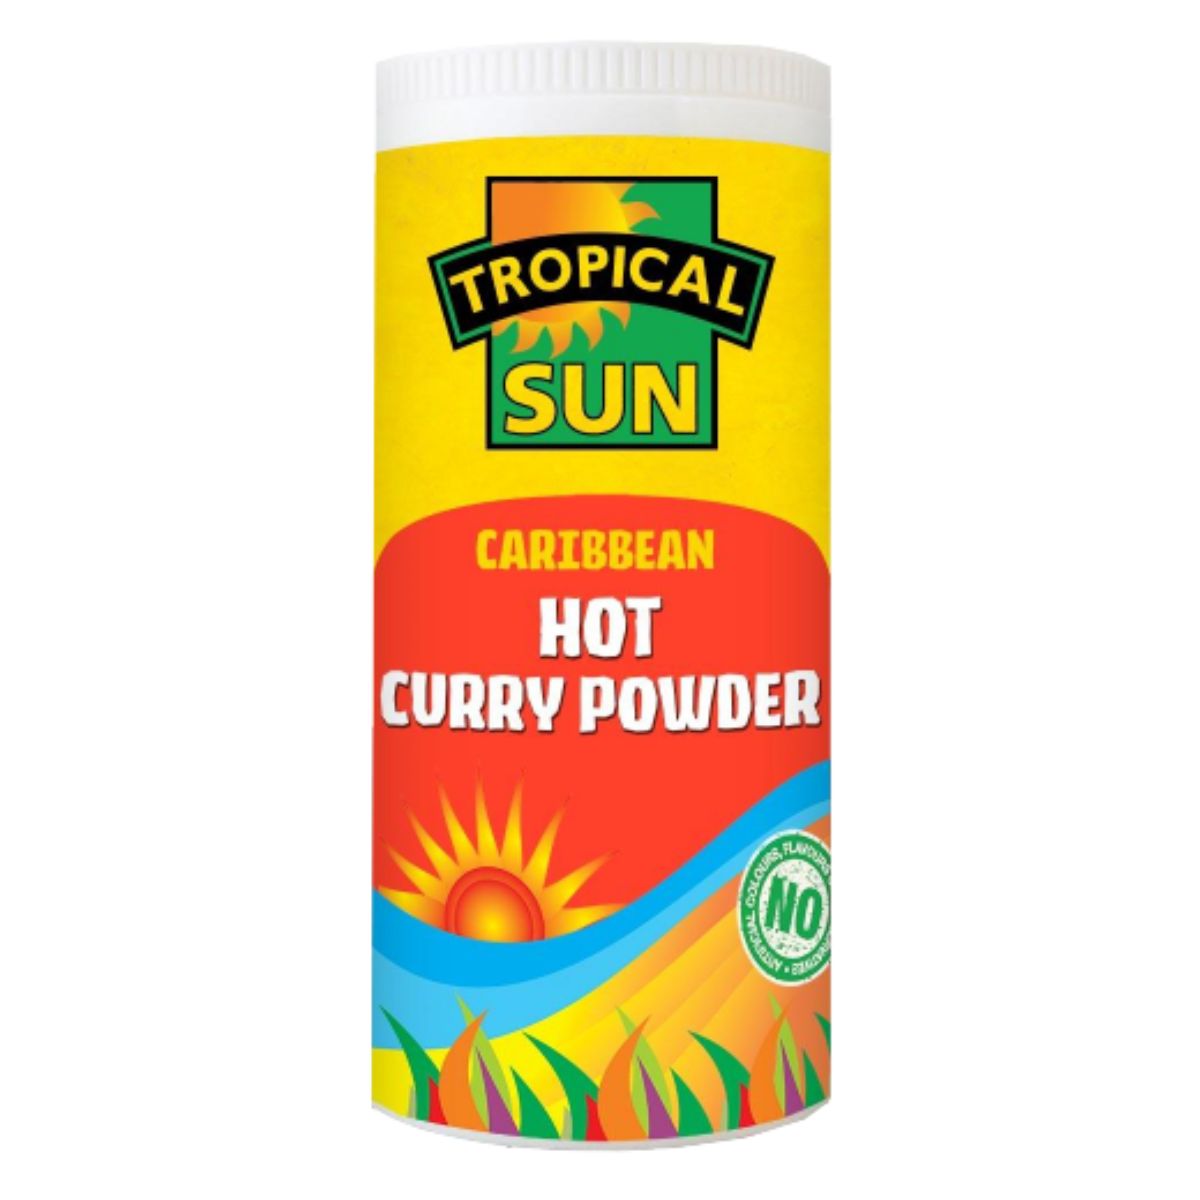 Tropical Sun - Caribbean Hot Curry Powder - 100g.